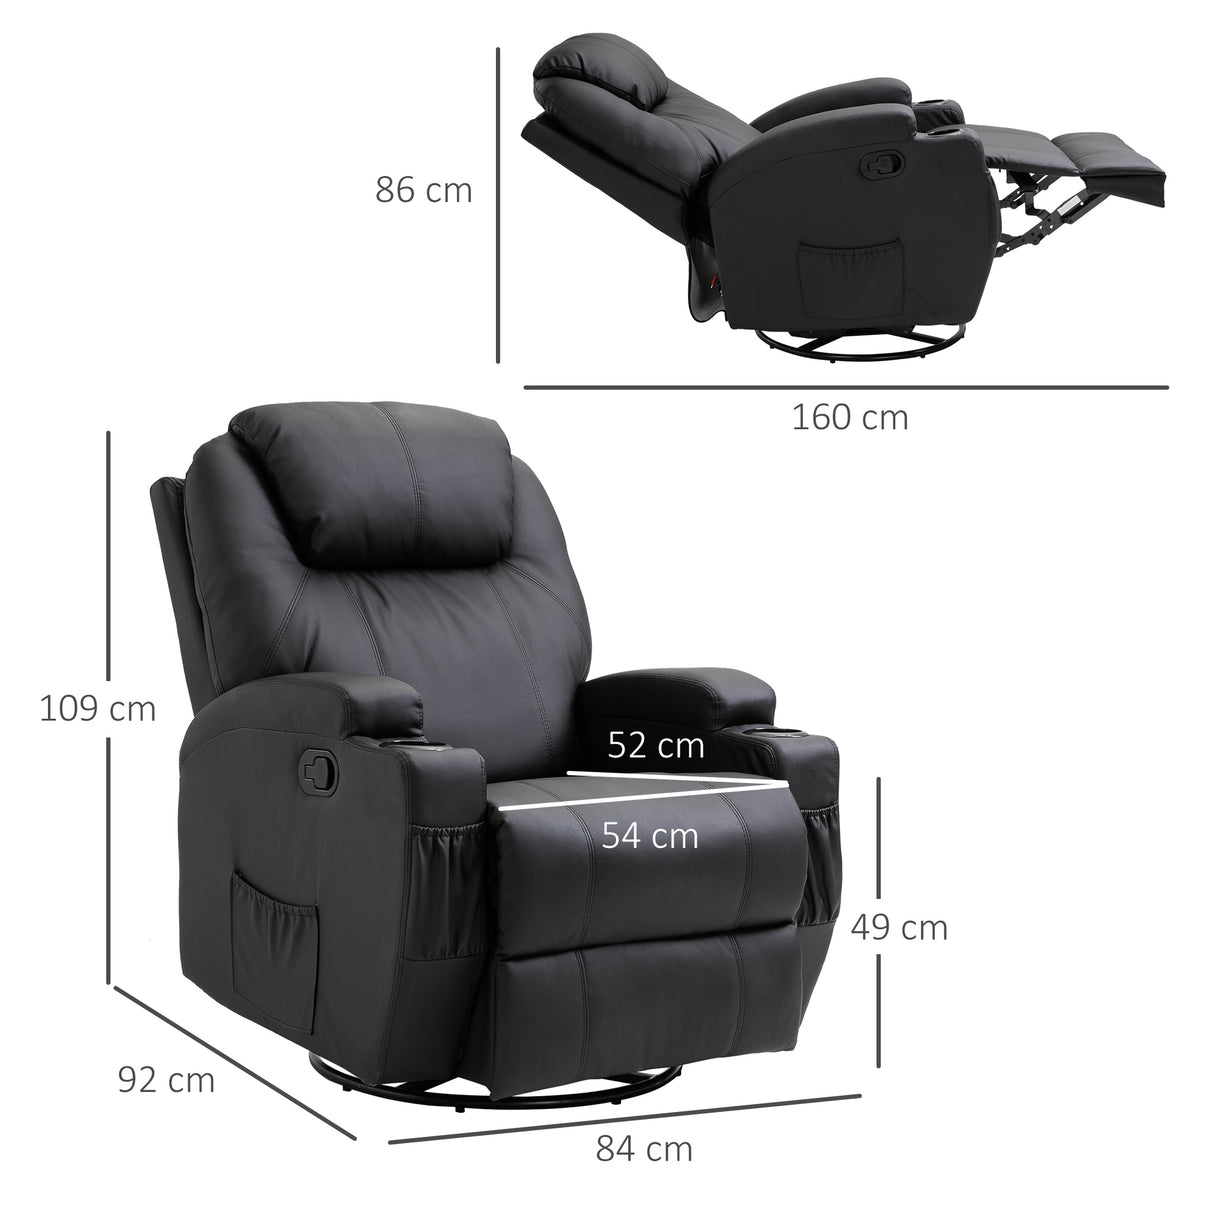 immagine-3-easycomfort-easycomfort-poltrona-relax-massaggiante-con-8-punti-5-modalita-e-2-intensita-reclinabile-con-poggiapiedi-e-girevole-84x92x109cm-nero